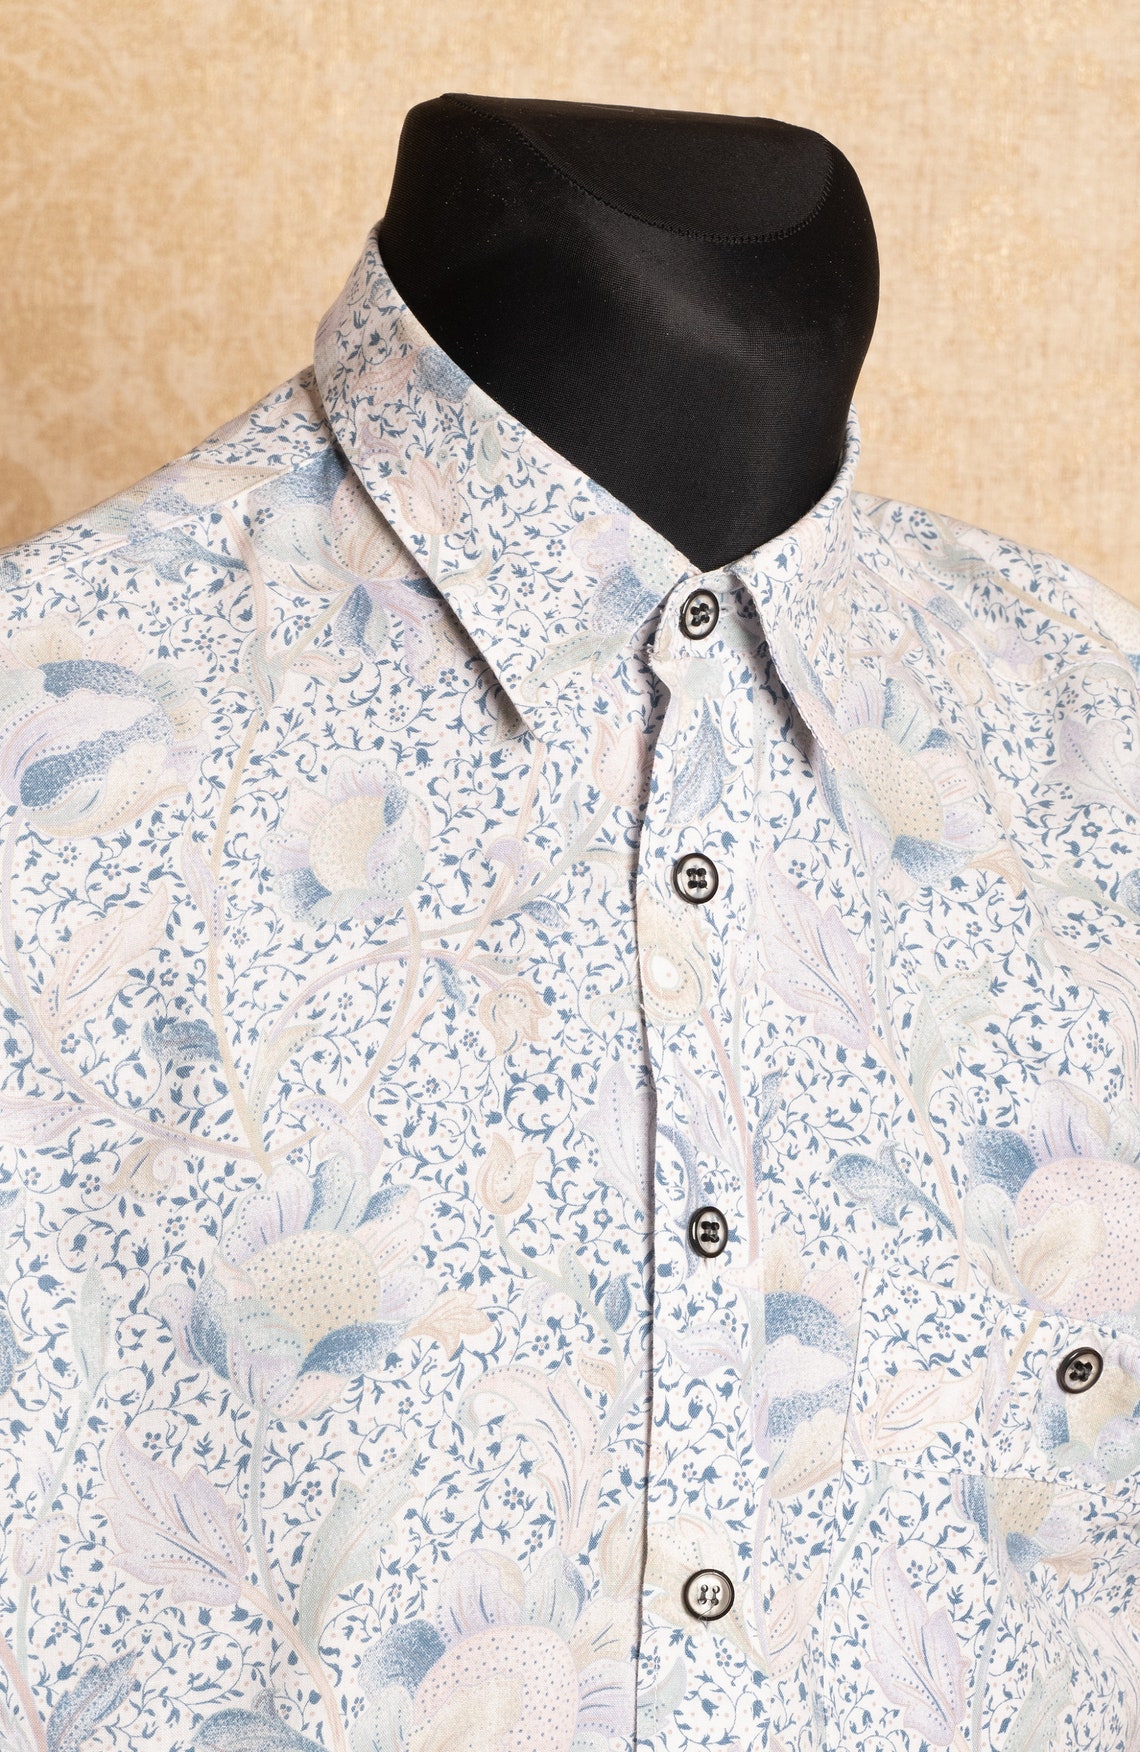 Blue floral men's cotton shirt / Subtle pastel ornament | Etsy